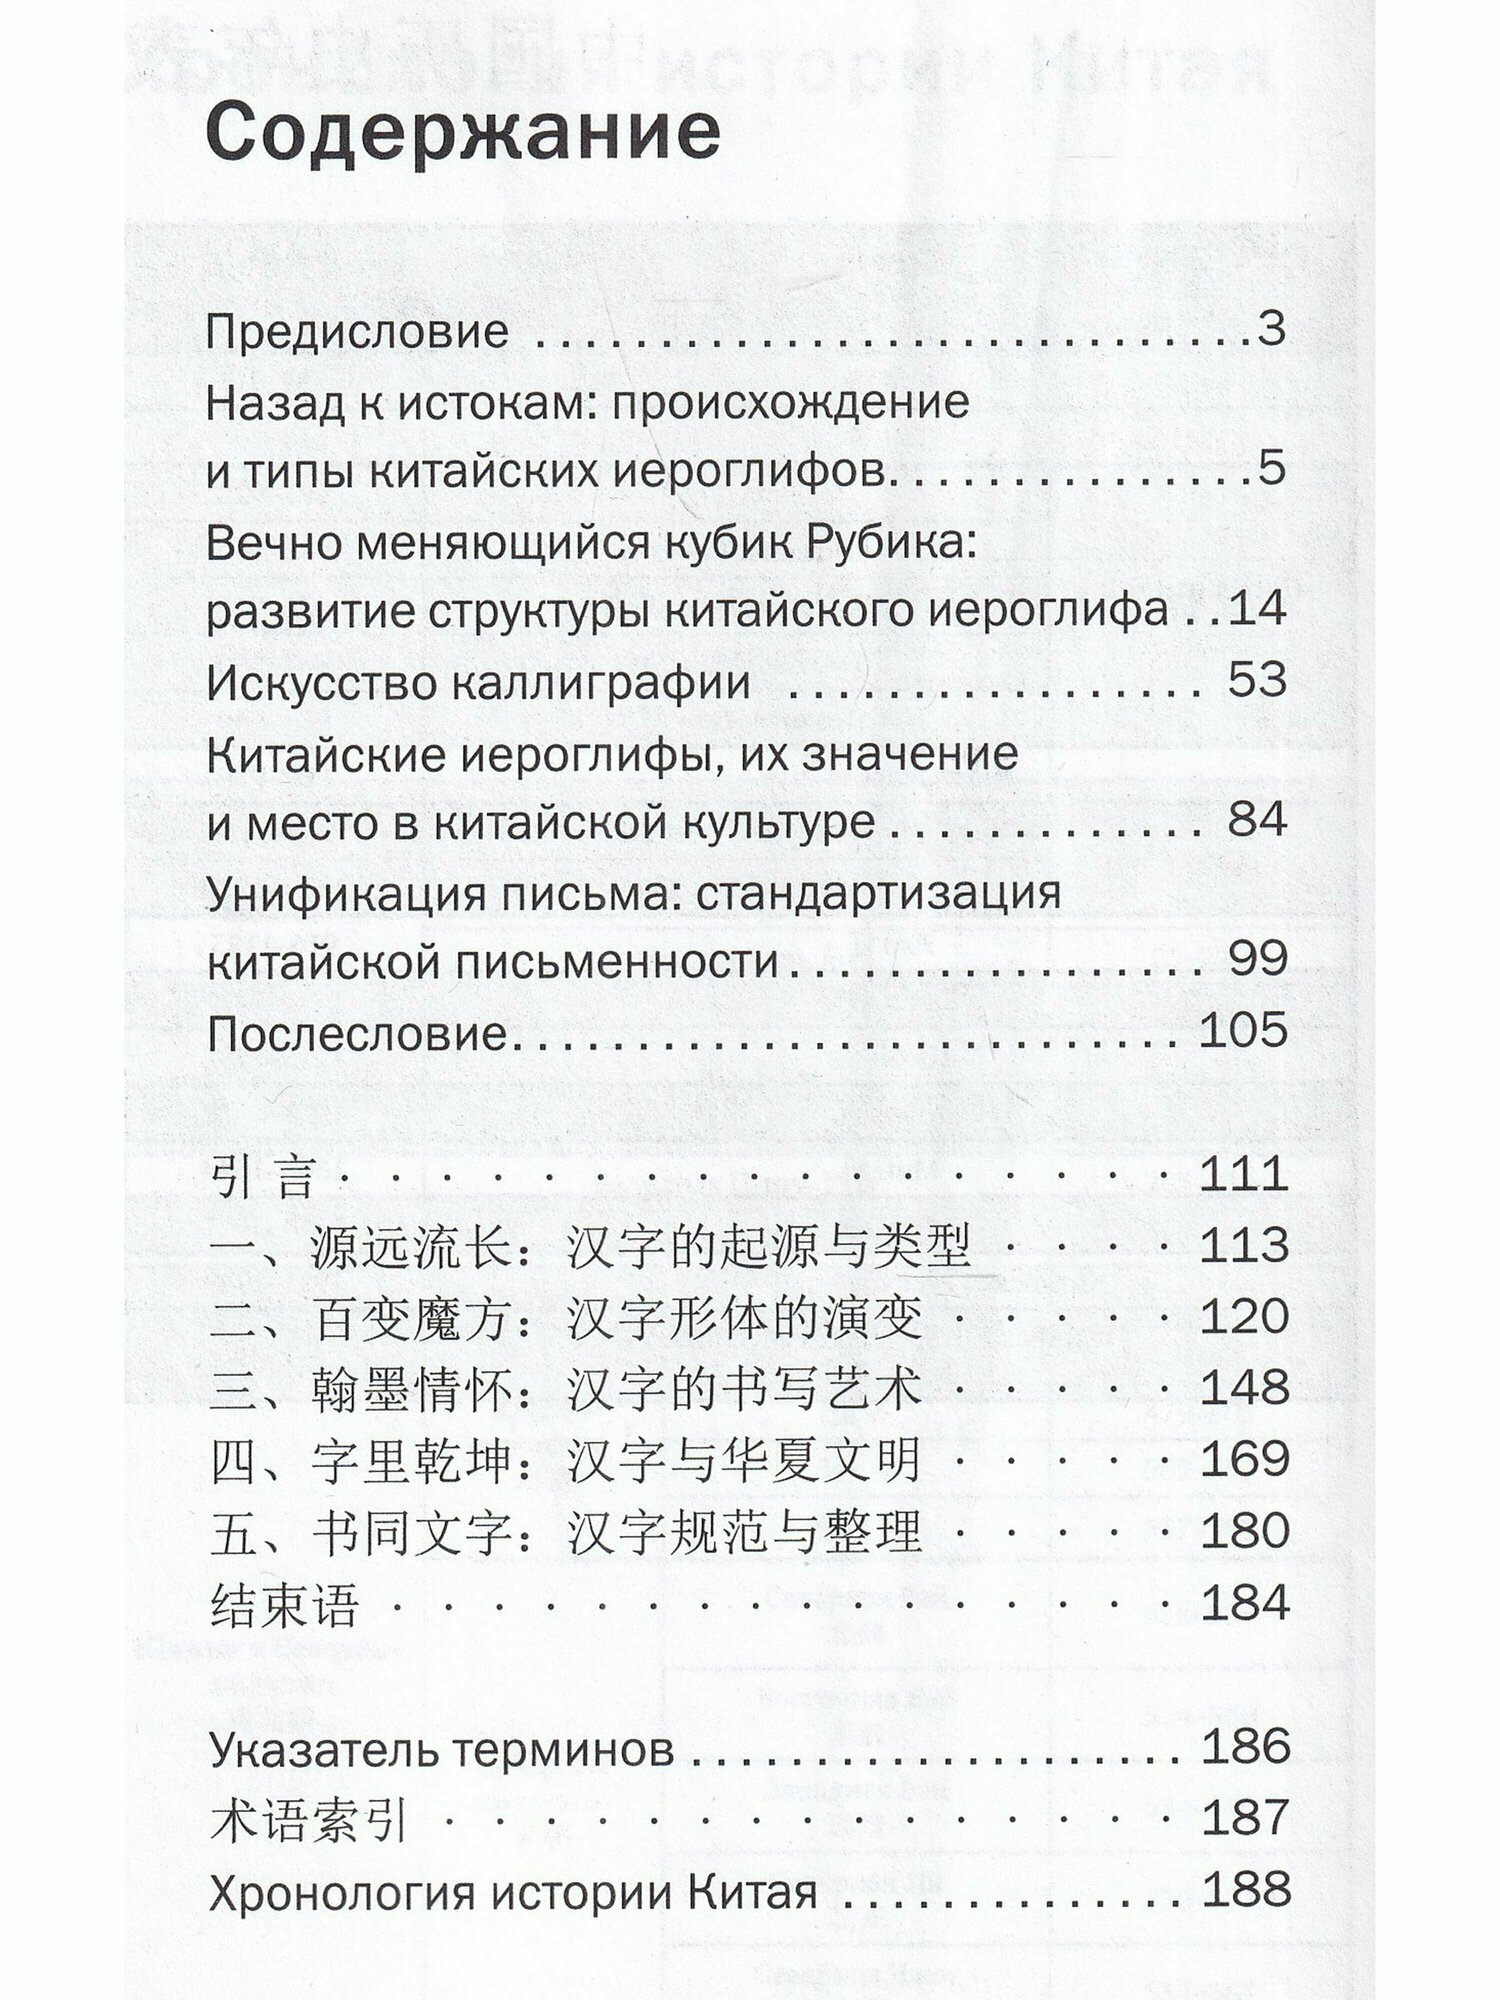 История китайских иероглифов (Южанинова А.А. (переводчик), Ван Най) - фото №8